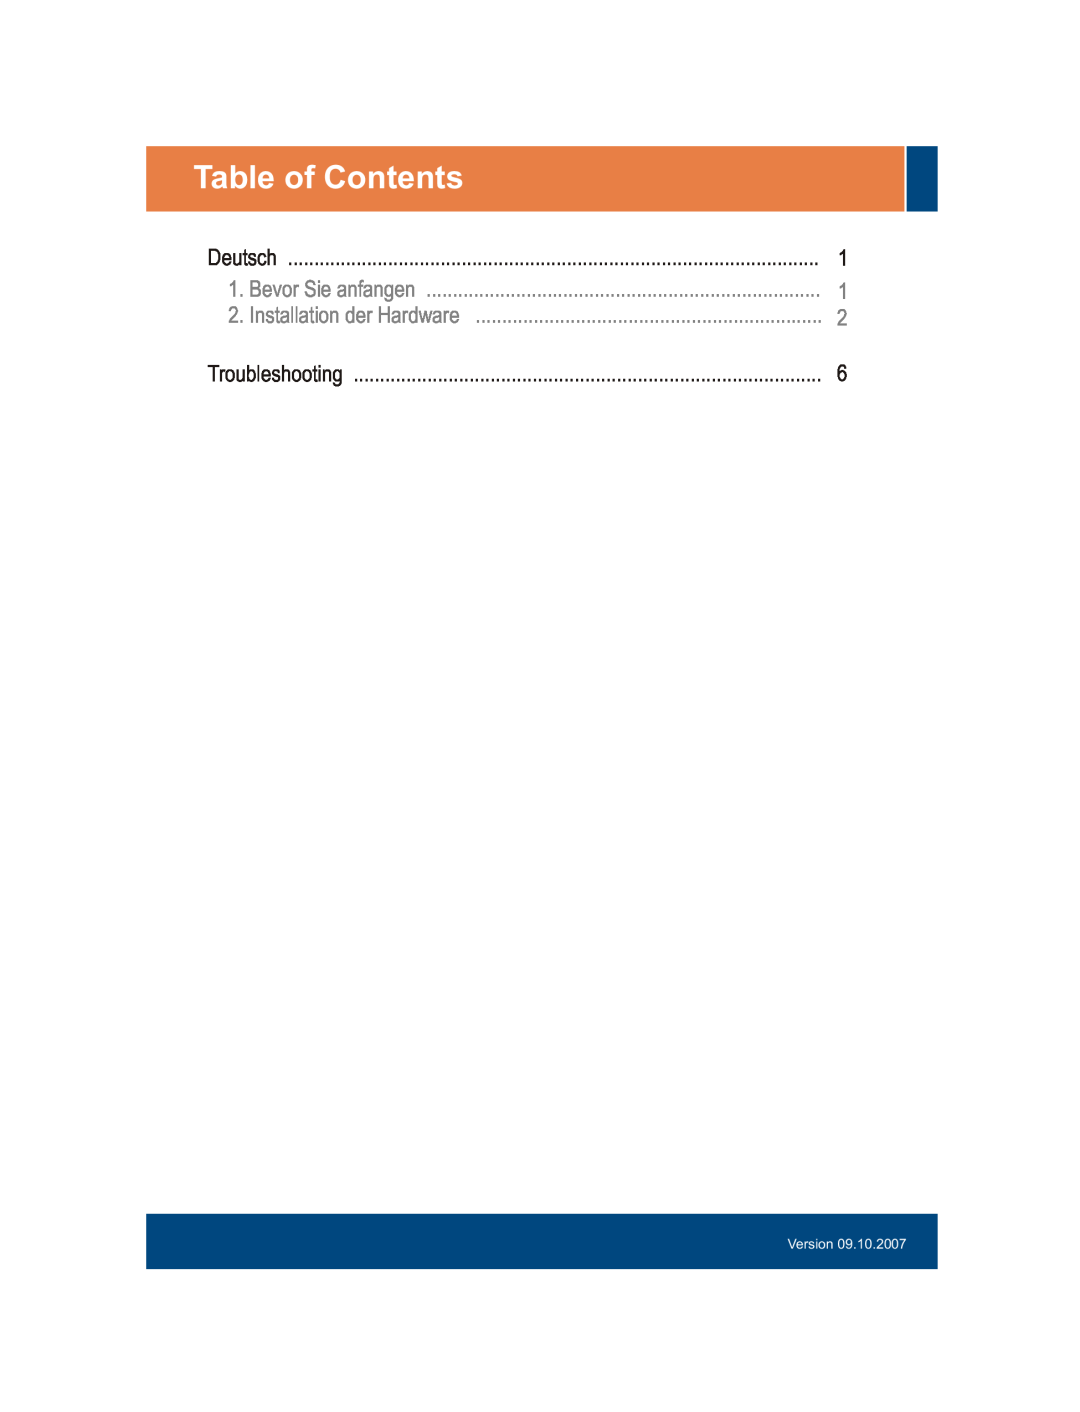 TRENDnet TEW-ASAL1 Table of Contents, Deutsch, Bevor Sie anfangen, Installation der Hardware, Troubleshooting, Version 